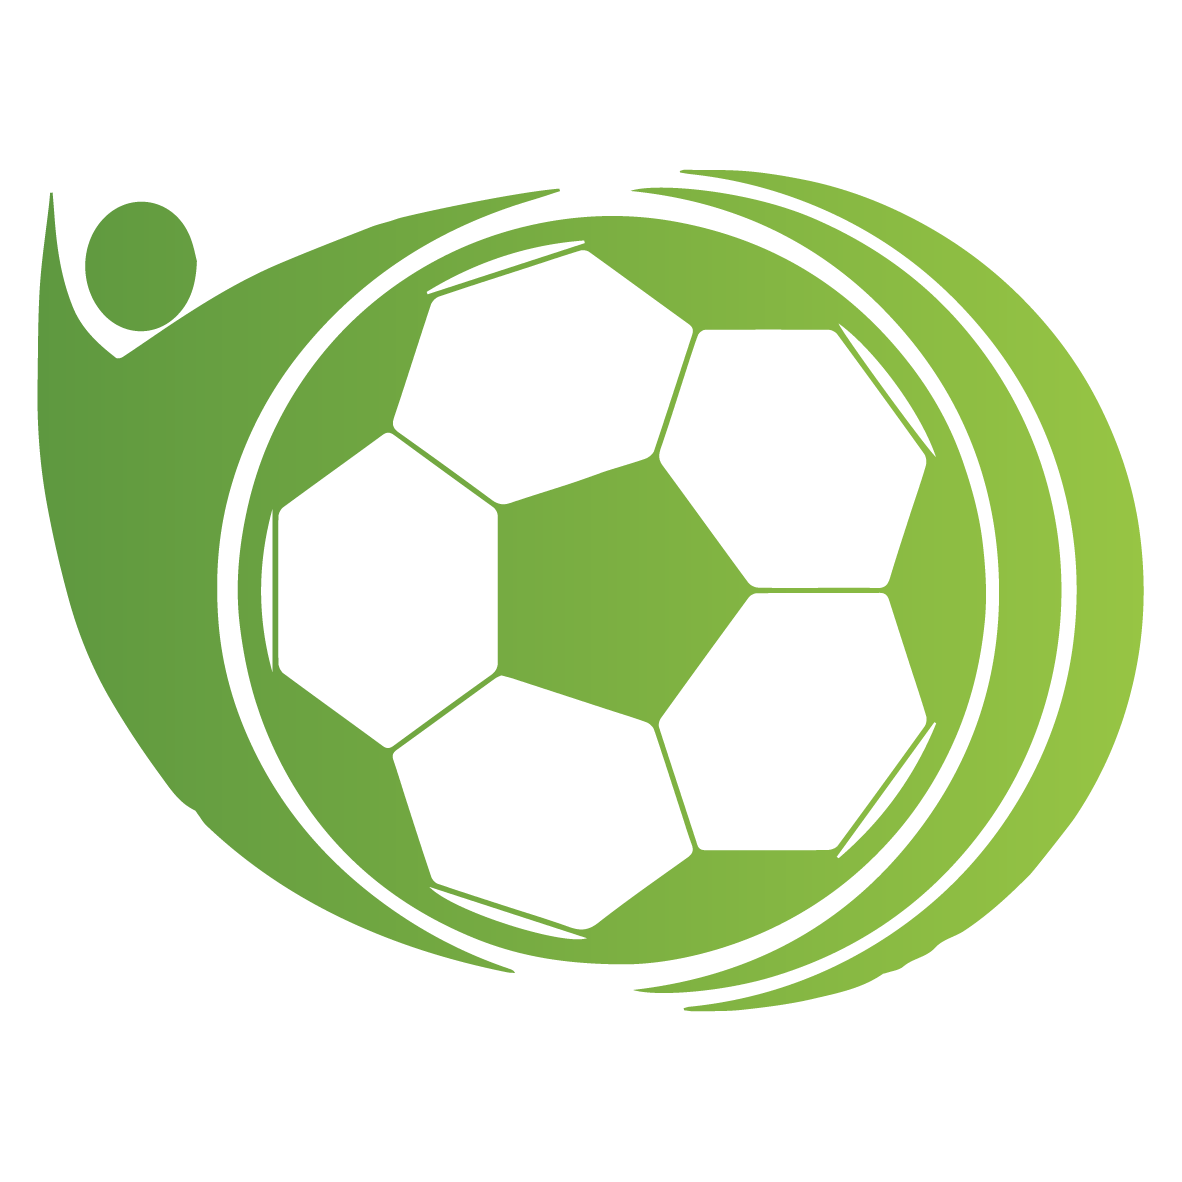 中超赛程_欧冠赛程_热门足球体育赛事实时赛程直播安排 - 足球赛程网